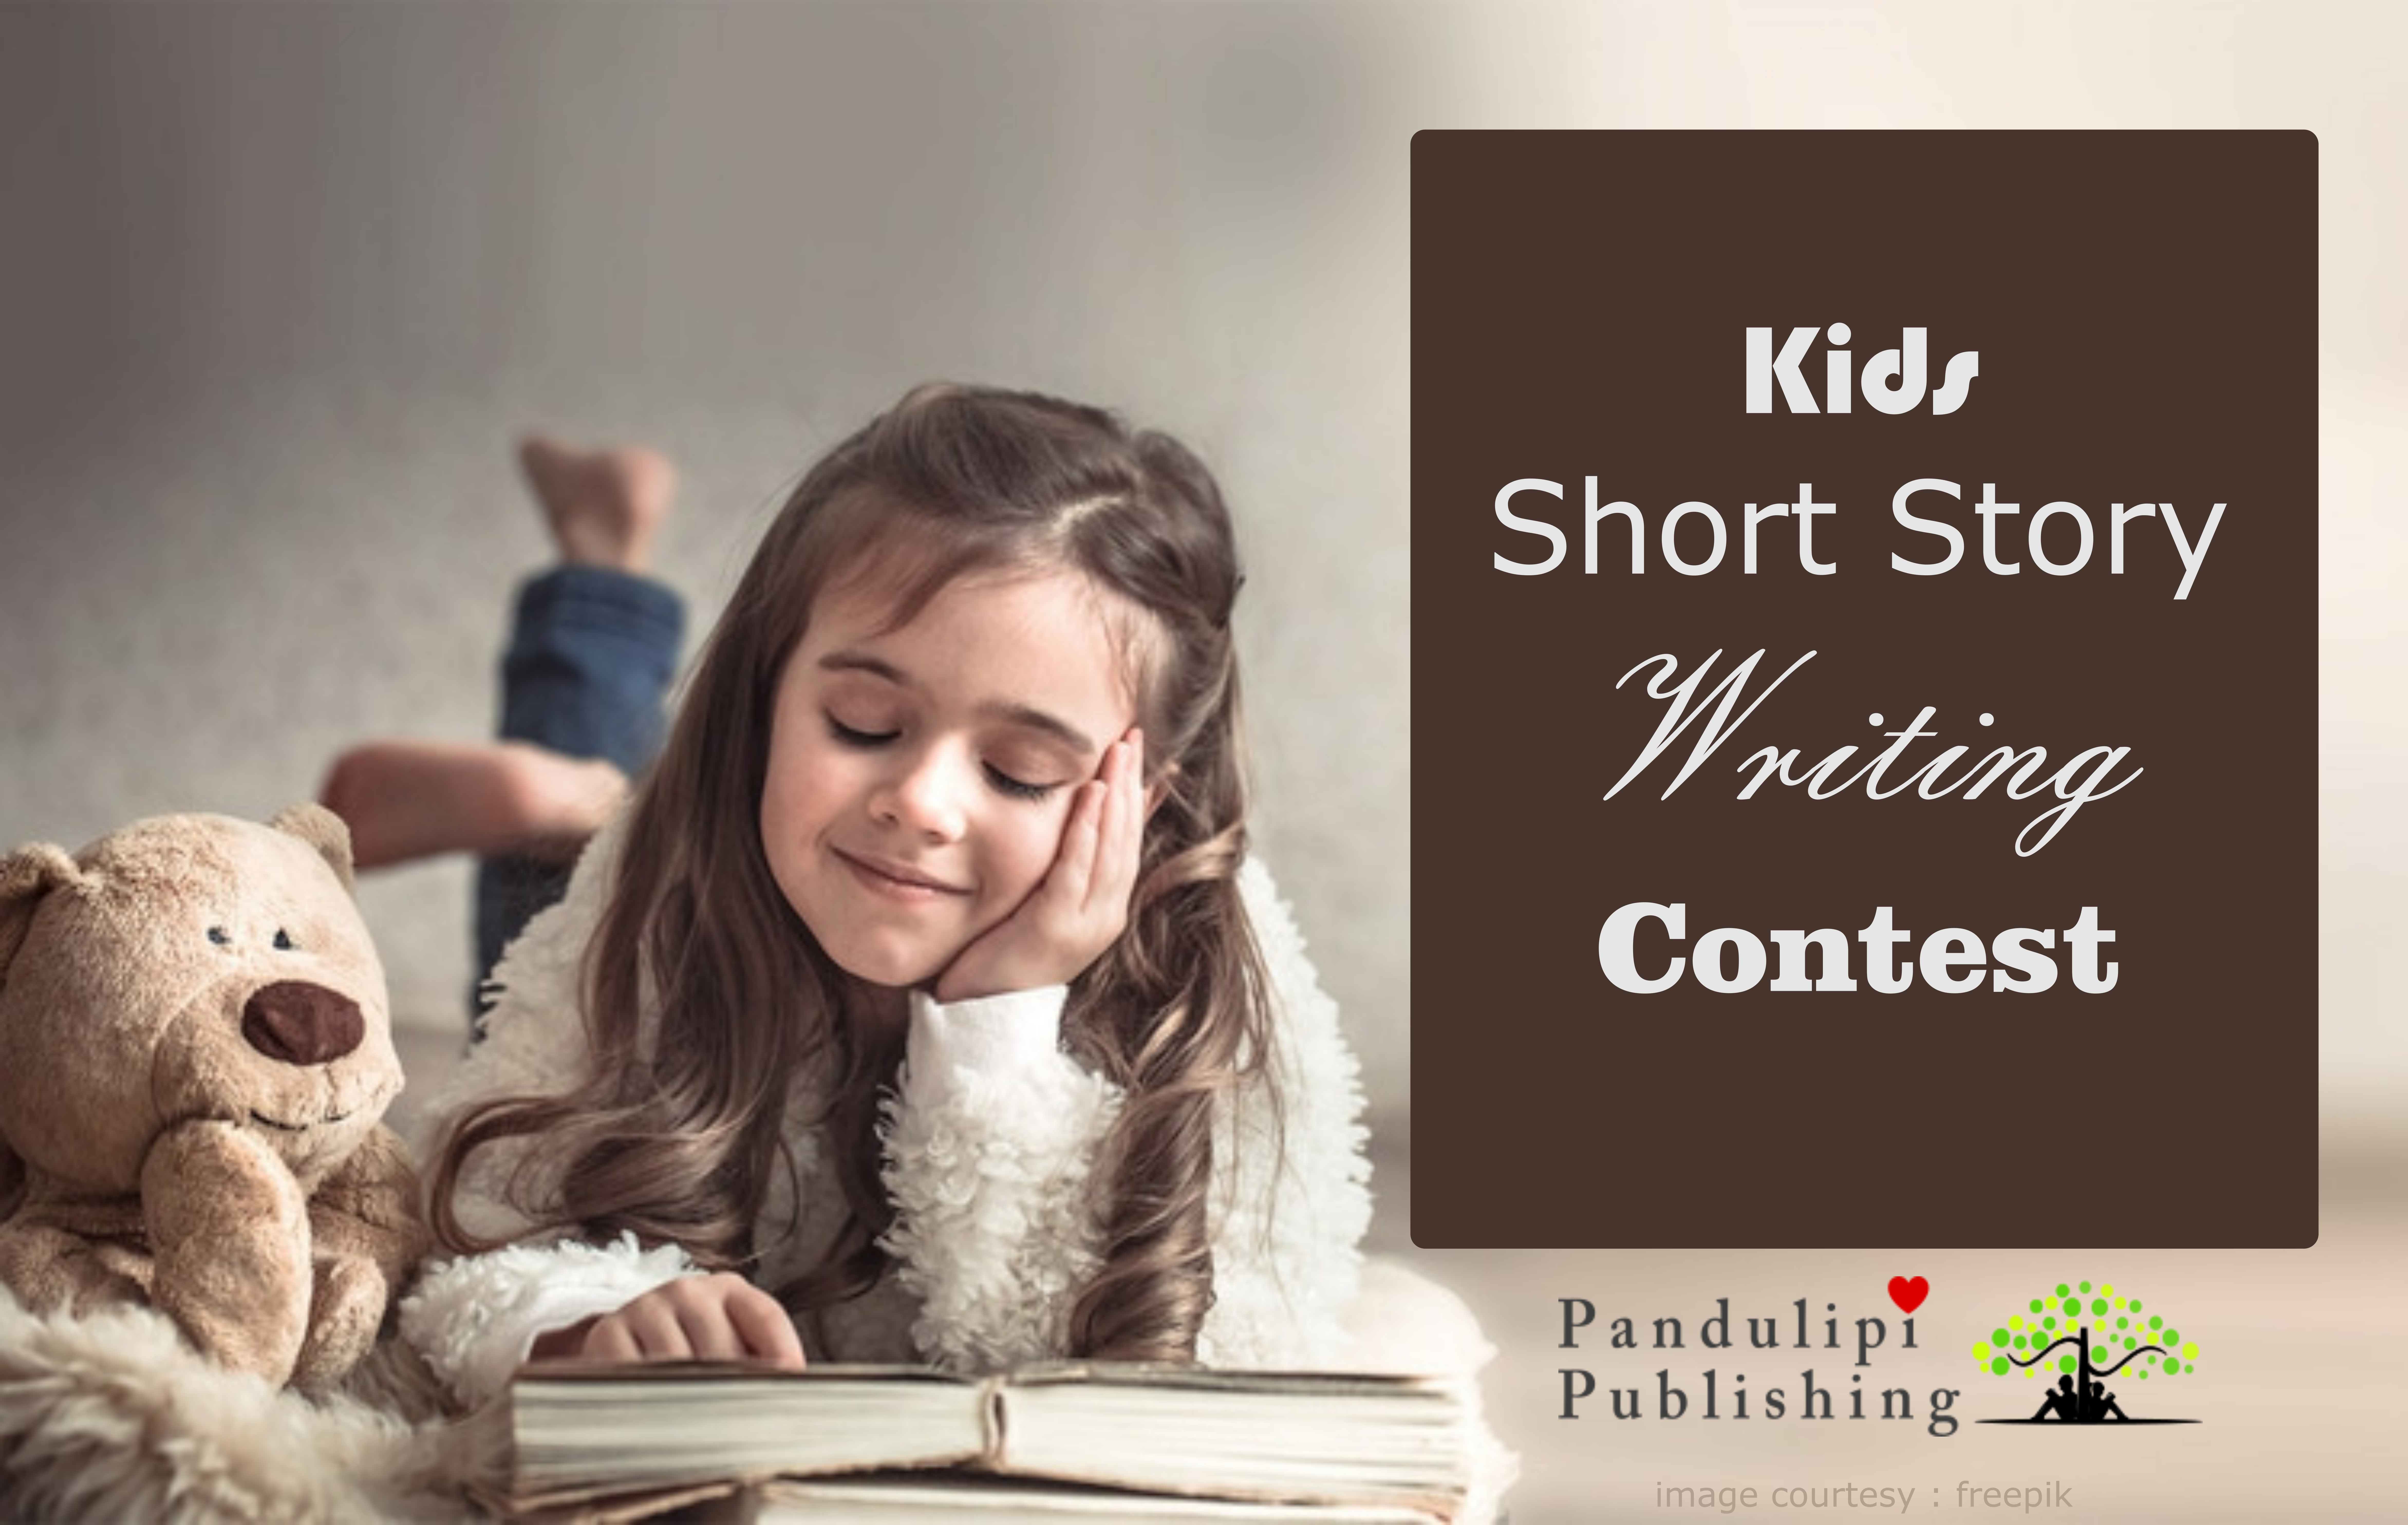 Kids short Story Writing Contest by Pandulipi Publishing